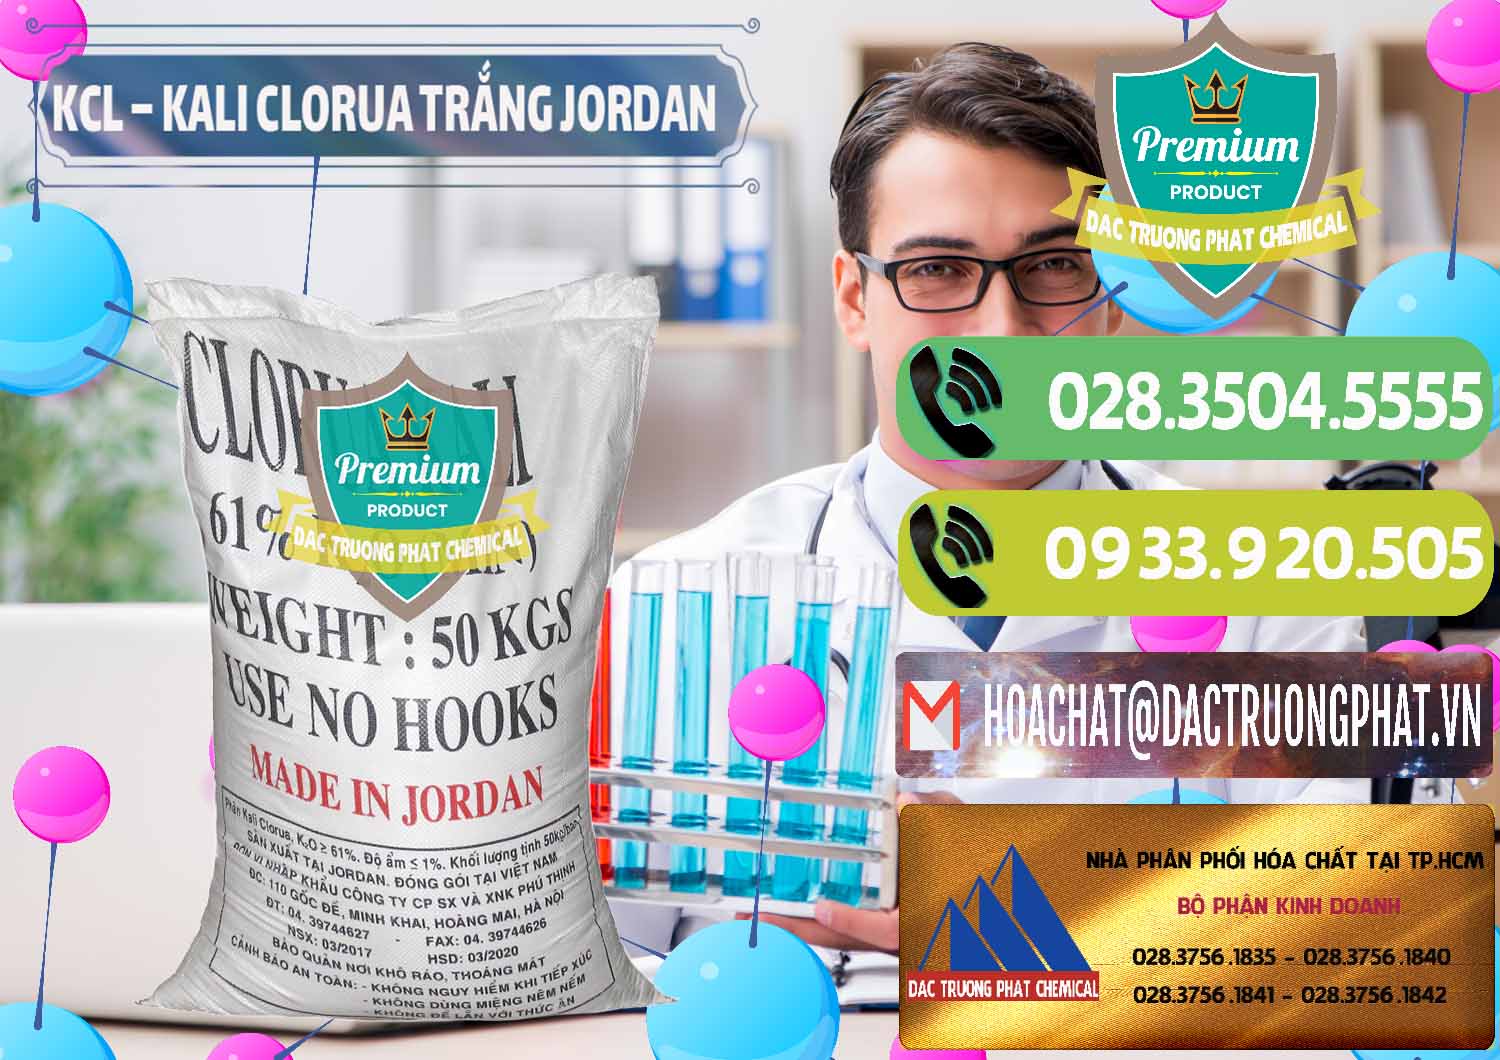 Nơi chuyên bán ( cung cấp ) KCL – Kali Clorua Trắng Jordan - 0088 - Cty kinh doanh và cung cấp hóa chất tại TP.HCM - hoachatmientay.vn